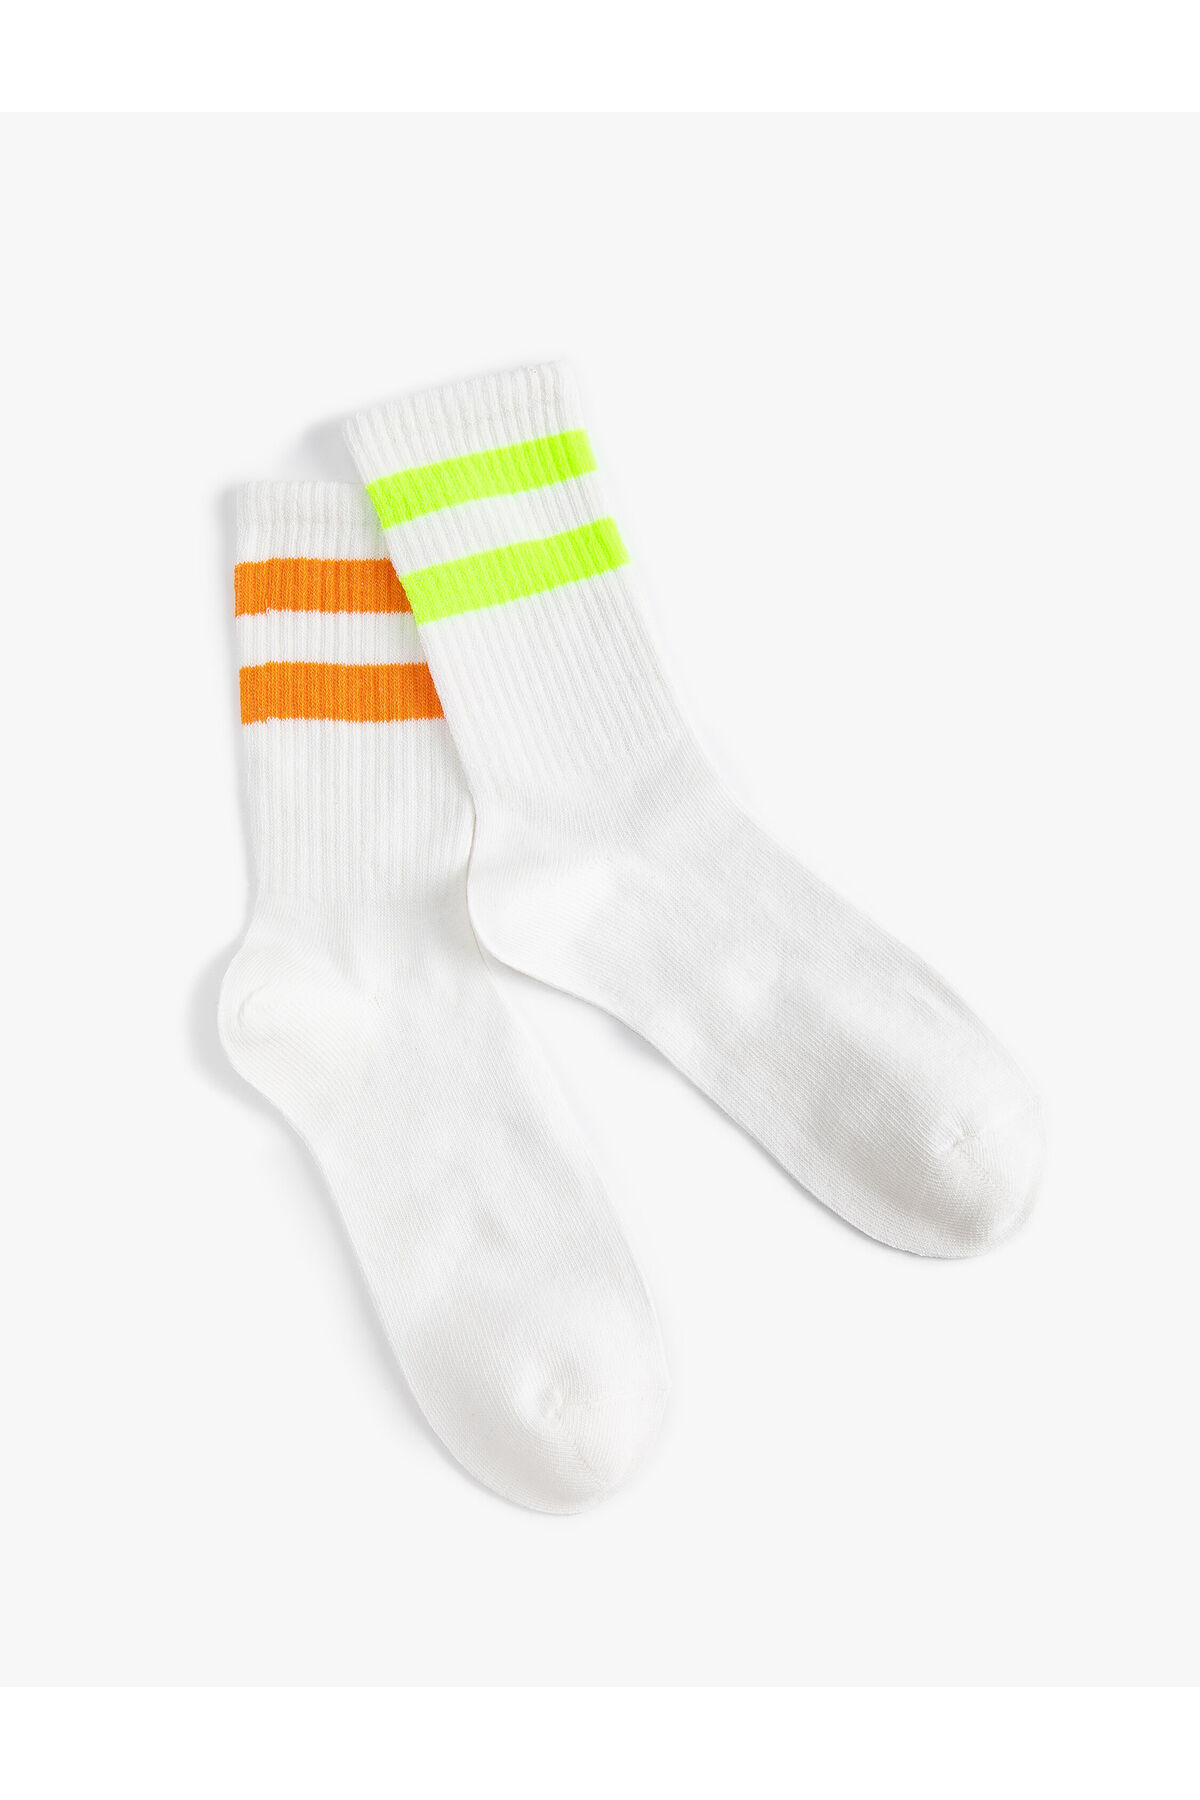 Levně Koton Set of 2 Tennis Socks Striped Patterned